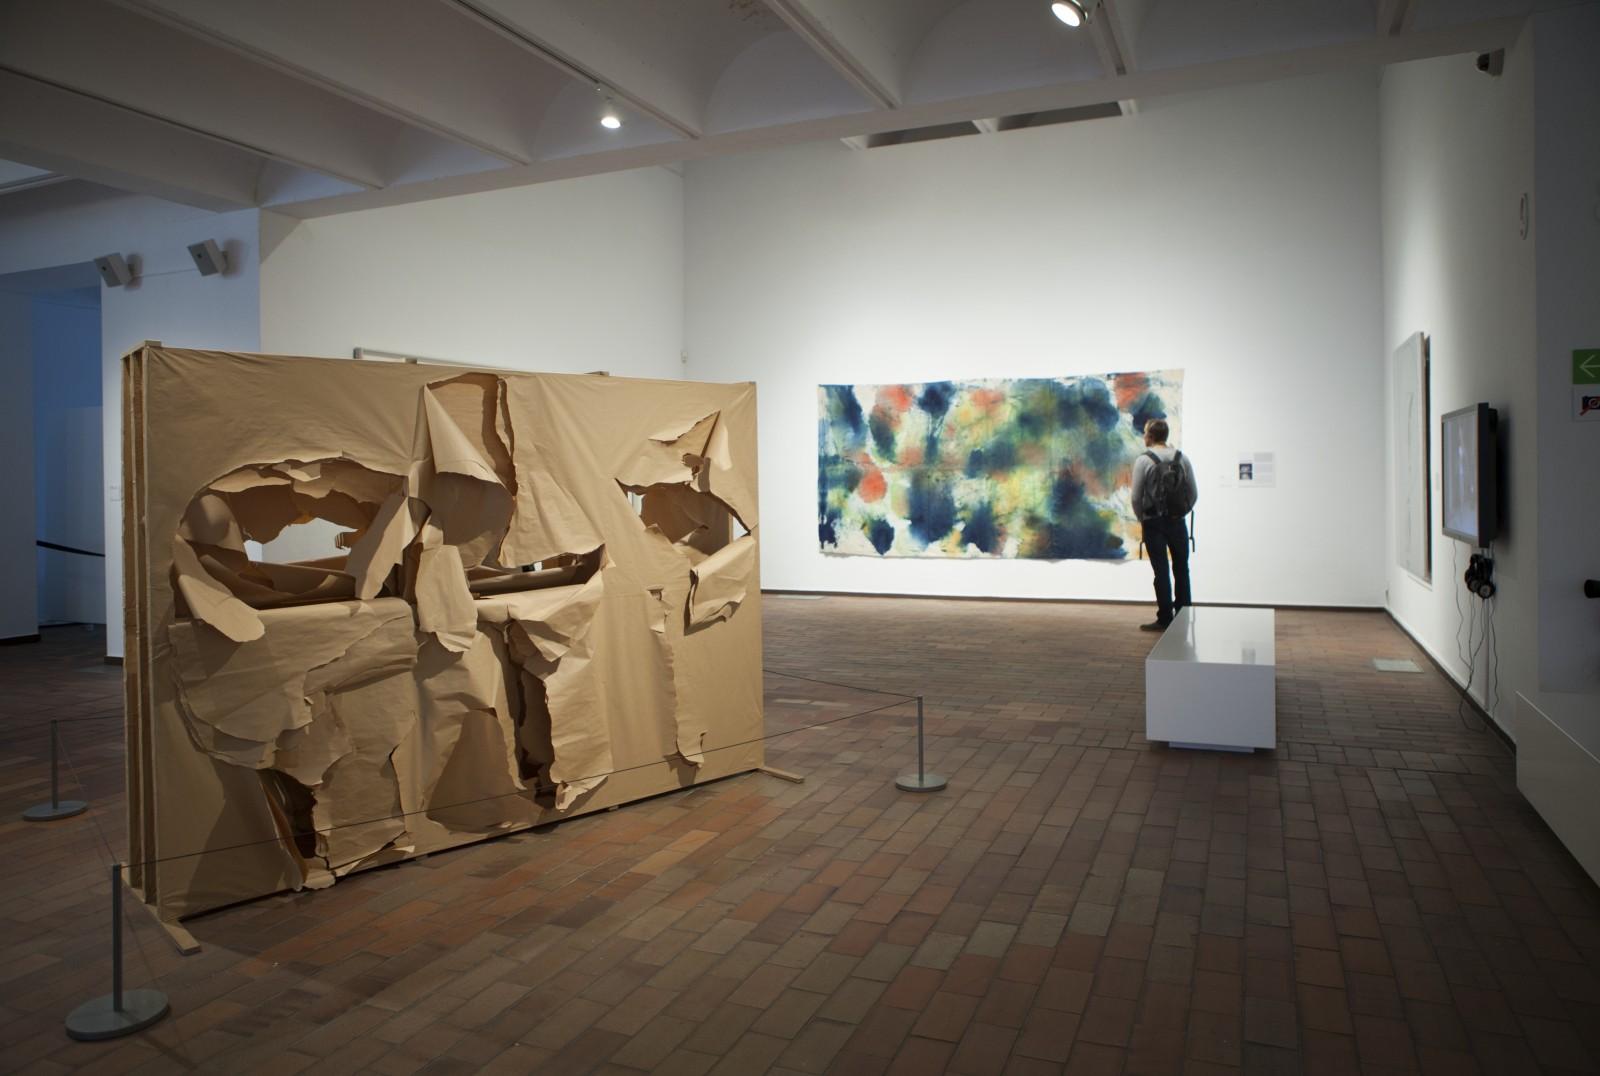 View of the exhibition, "Explosió! El llegat de Jackson Pollock", Fundació Joan Miró, 2012